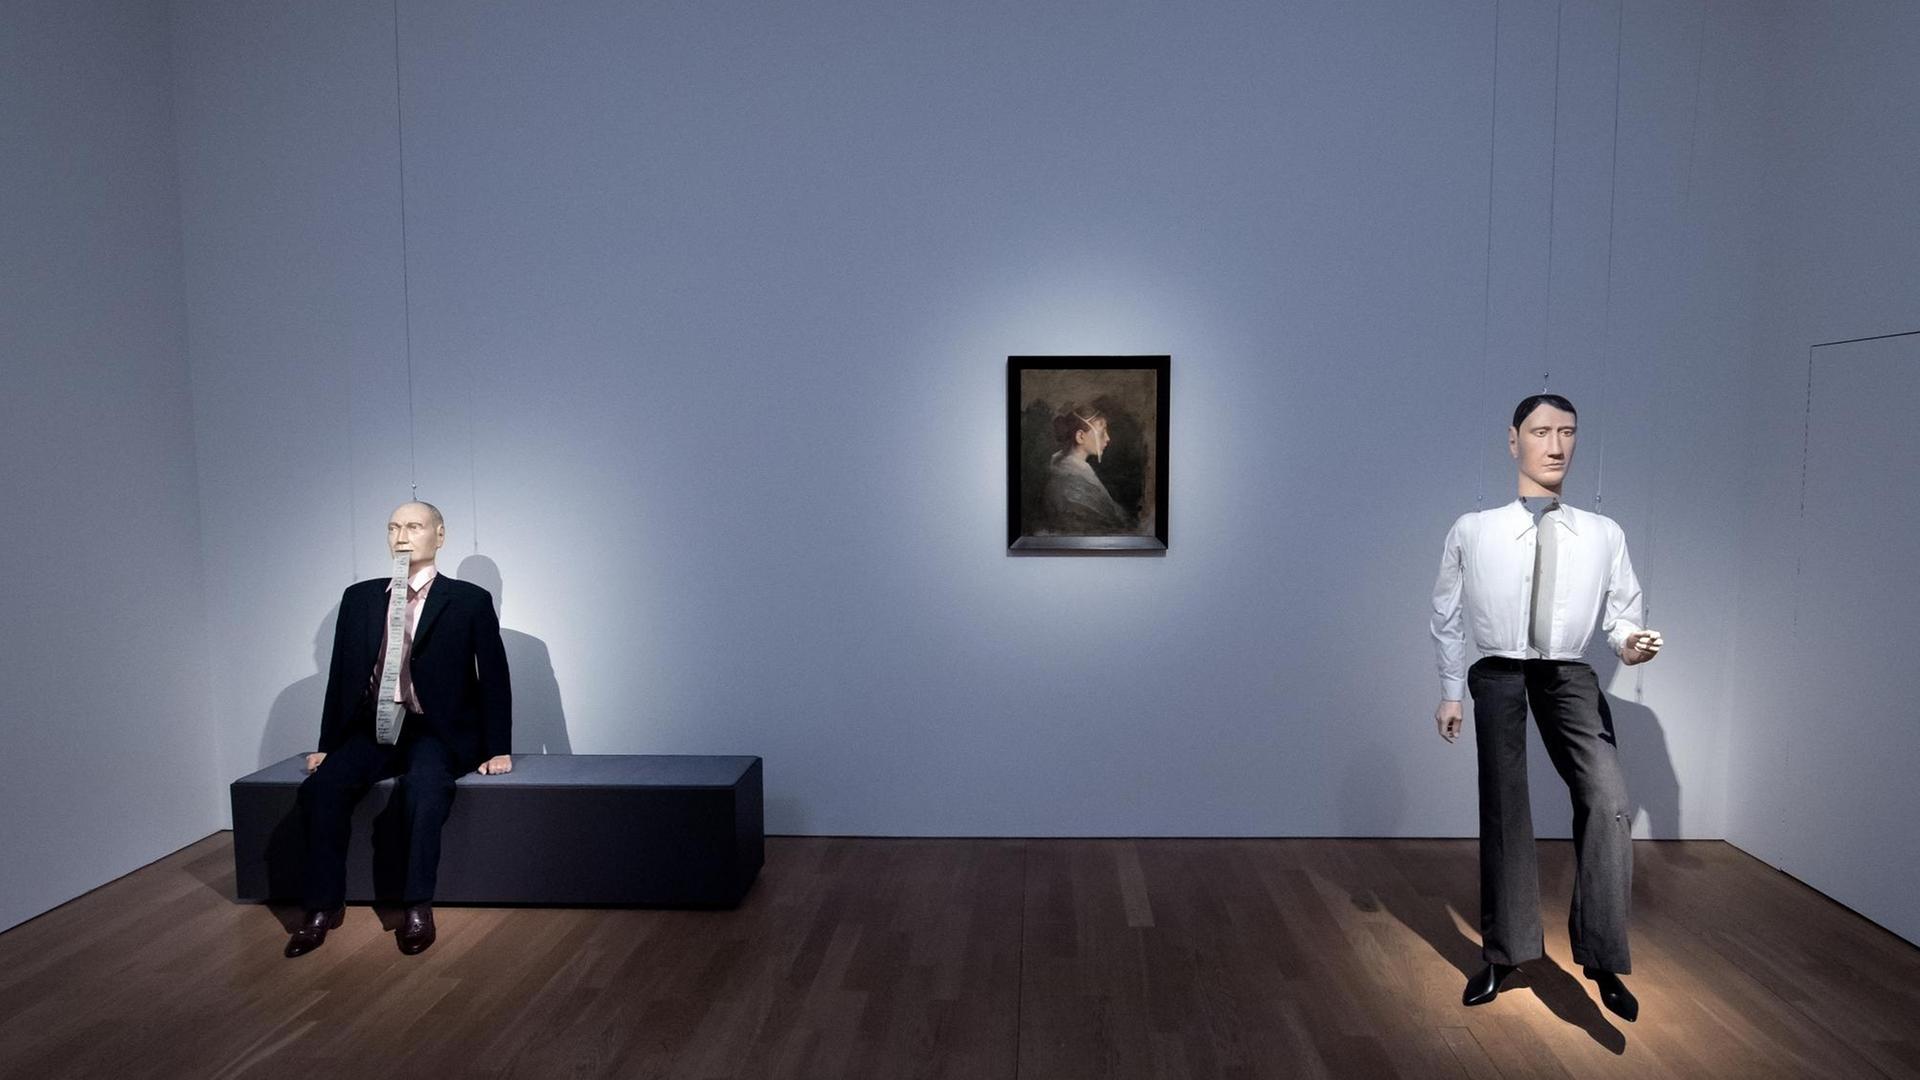 Die Installationen "Hans", "Kacia" und "Albert" des Künstlers Schinwald in der Kunsthalle München: Auf einer bank sitzt eine männliche Puppe, rechts davon hängt ein Porträtbild einer Frau, rechts davon steht eine männliche Puppe.